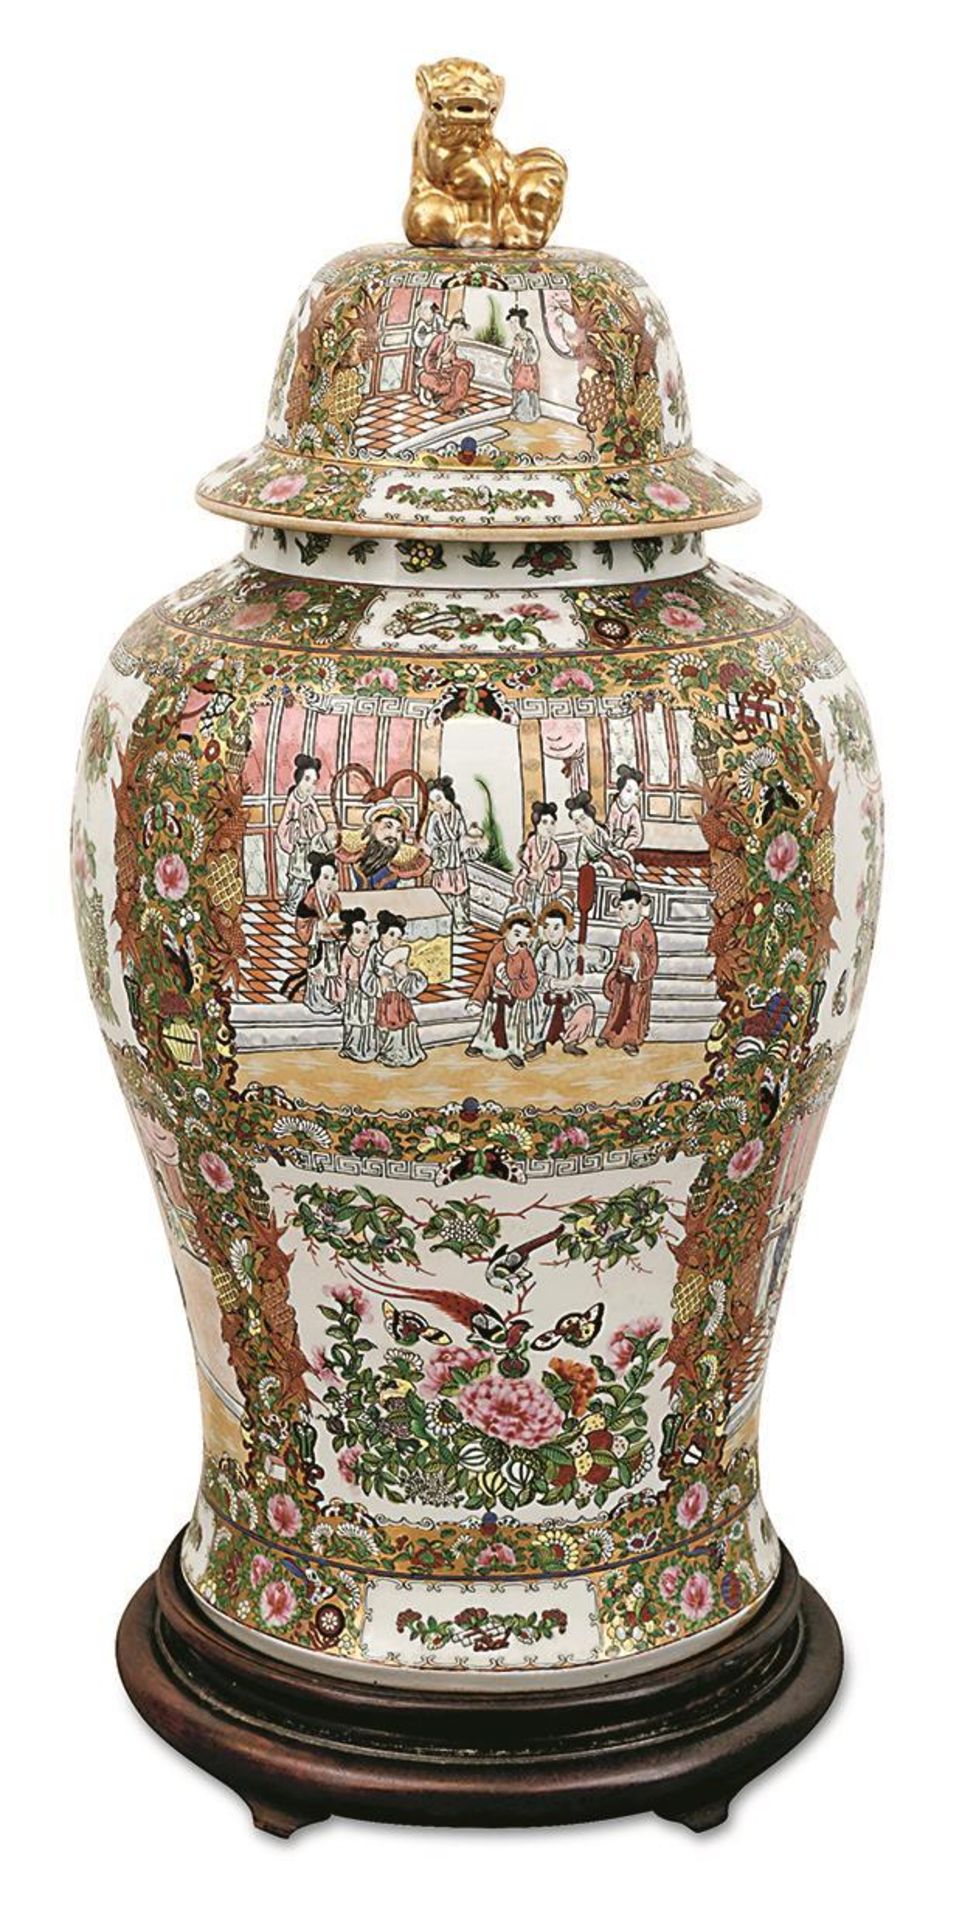 Große Deckelvase. China, 20. Jh. | Porzellan, Farb- und Goldstaffage. - Bild 2 aus 4